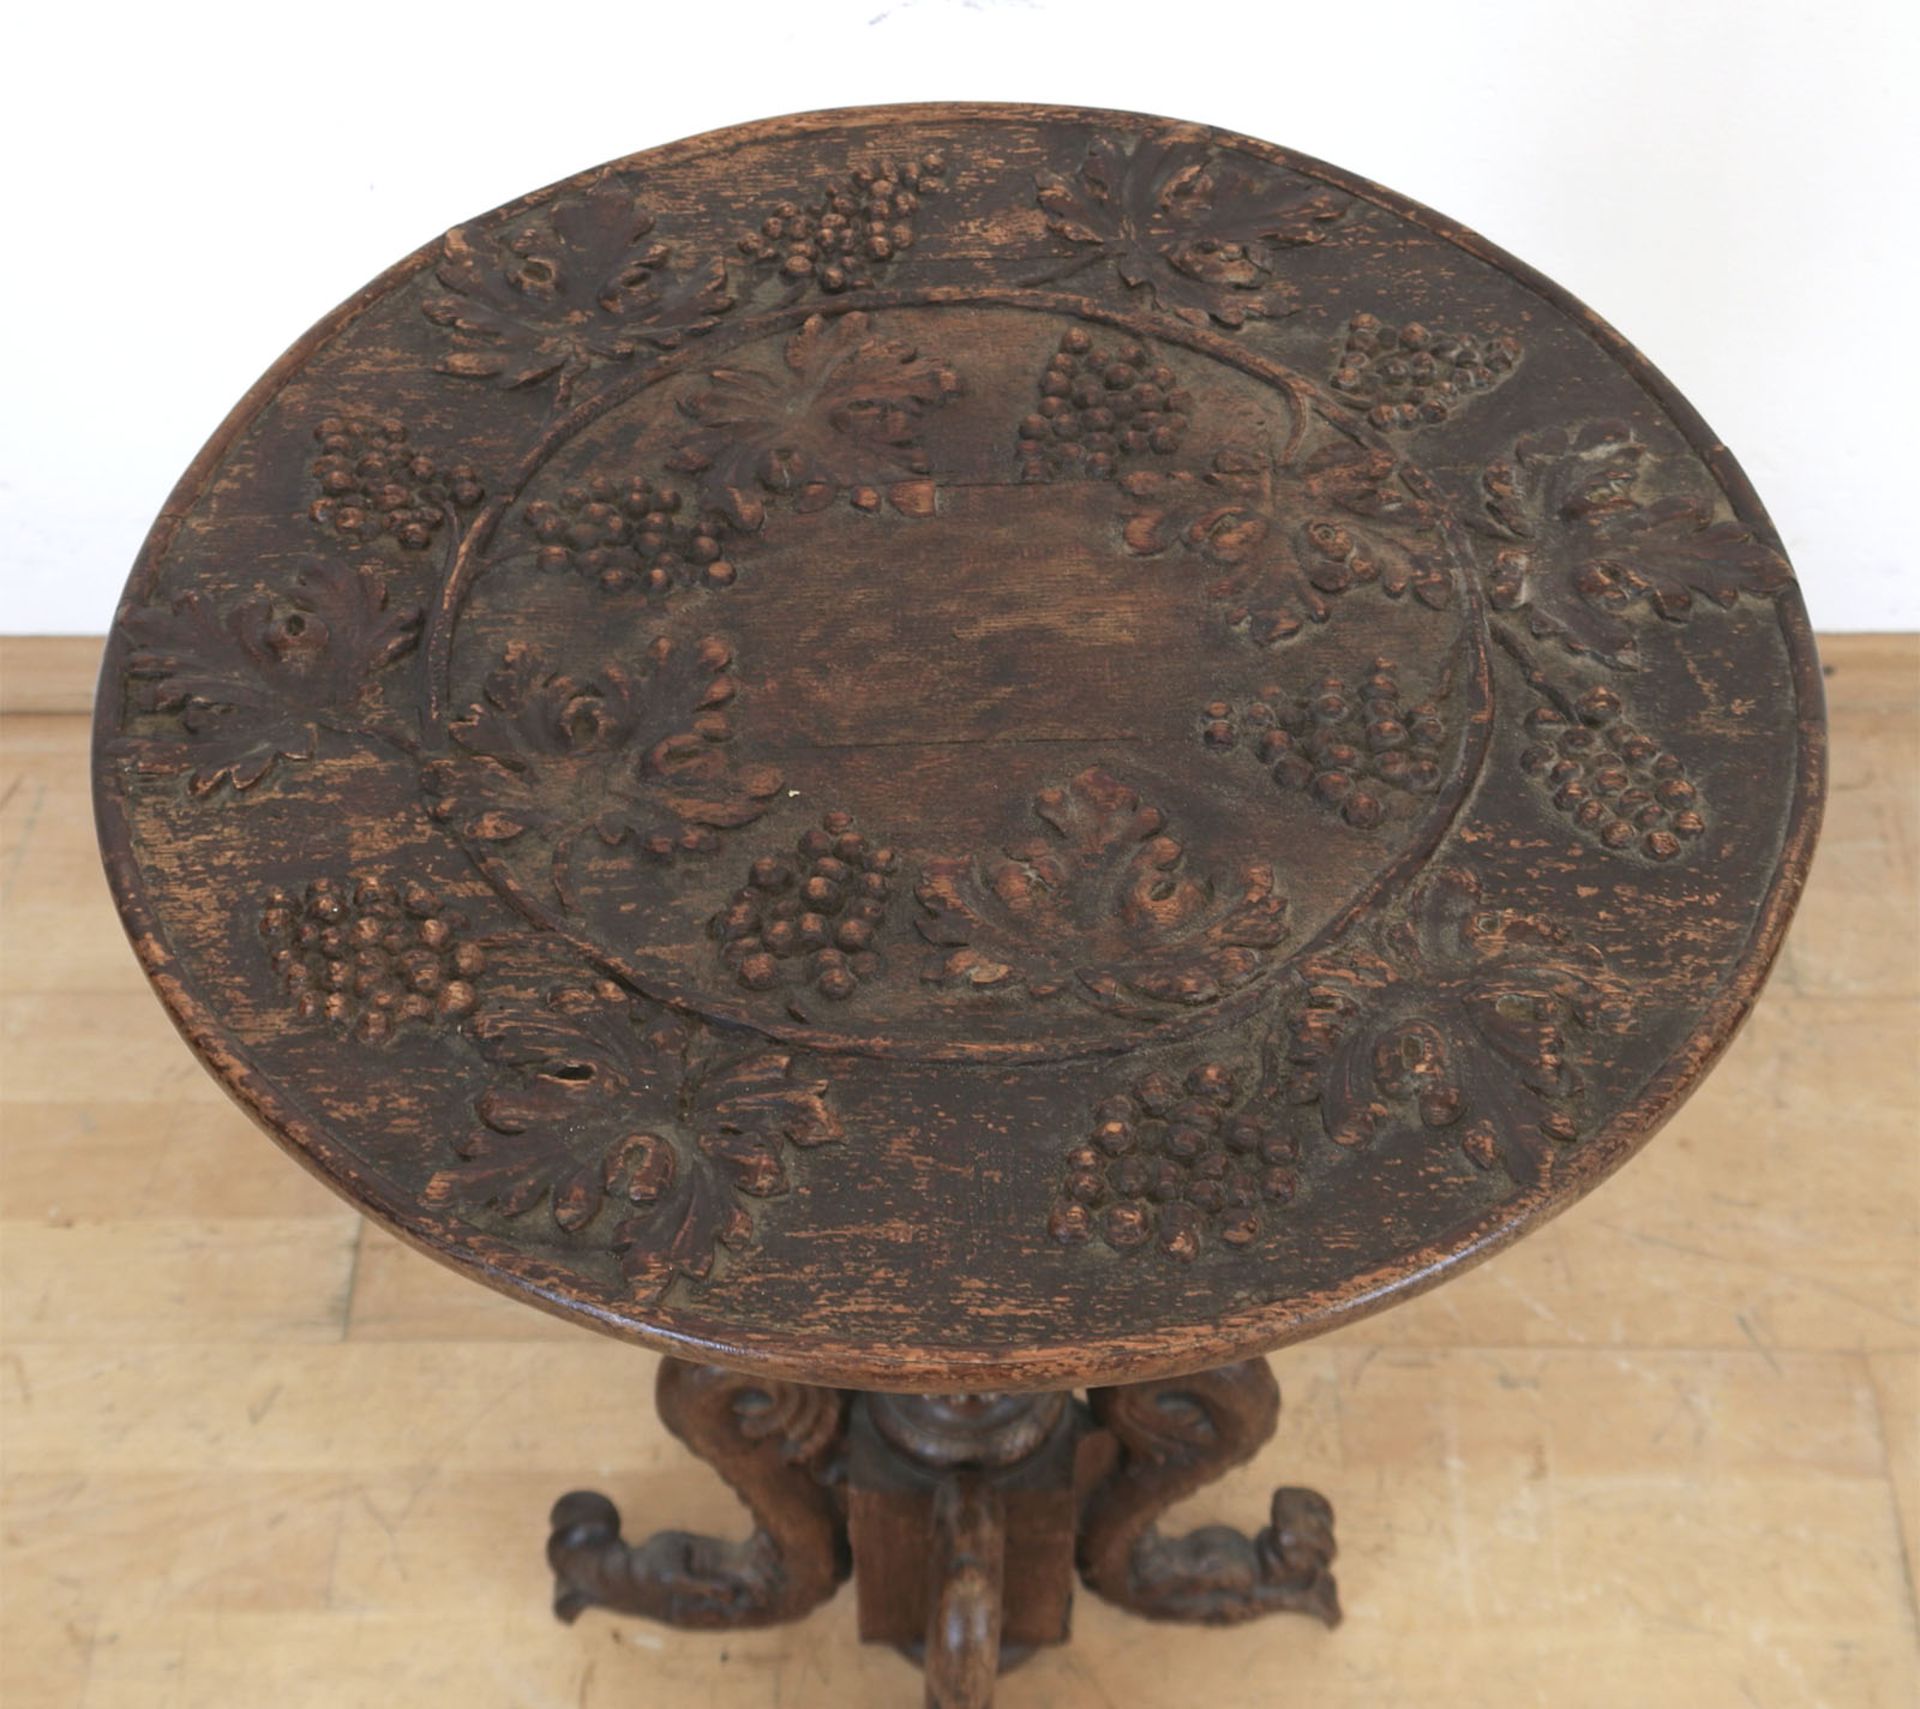 Historismus-Tisch, Eiche, beschnitzt, Balustersäule mit 4 Füßen in Form von Fabelwesen, runde Platt - Bild 2 aus 2